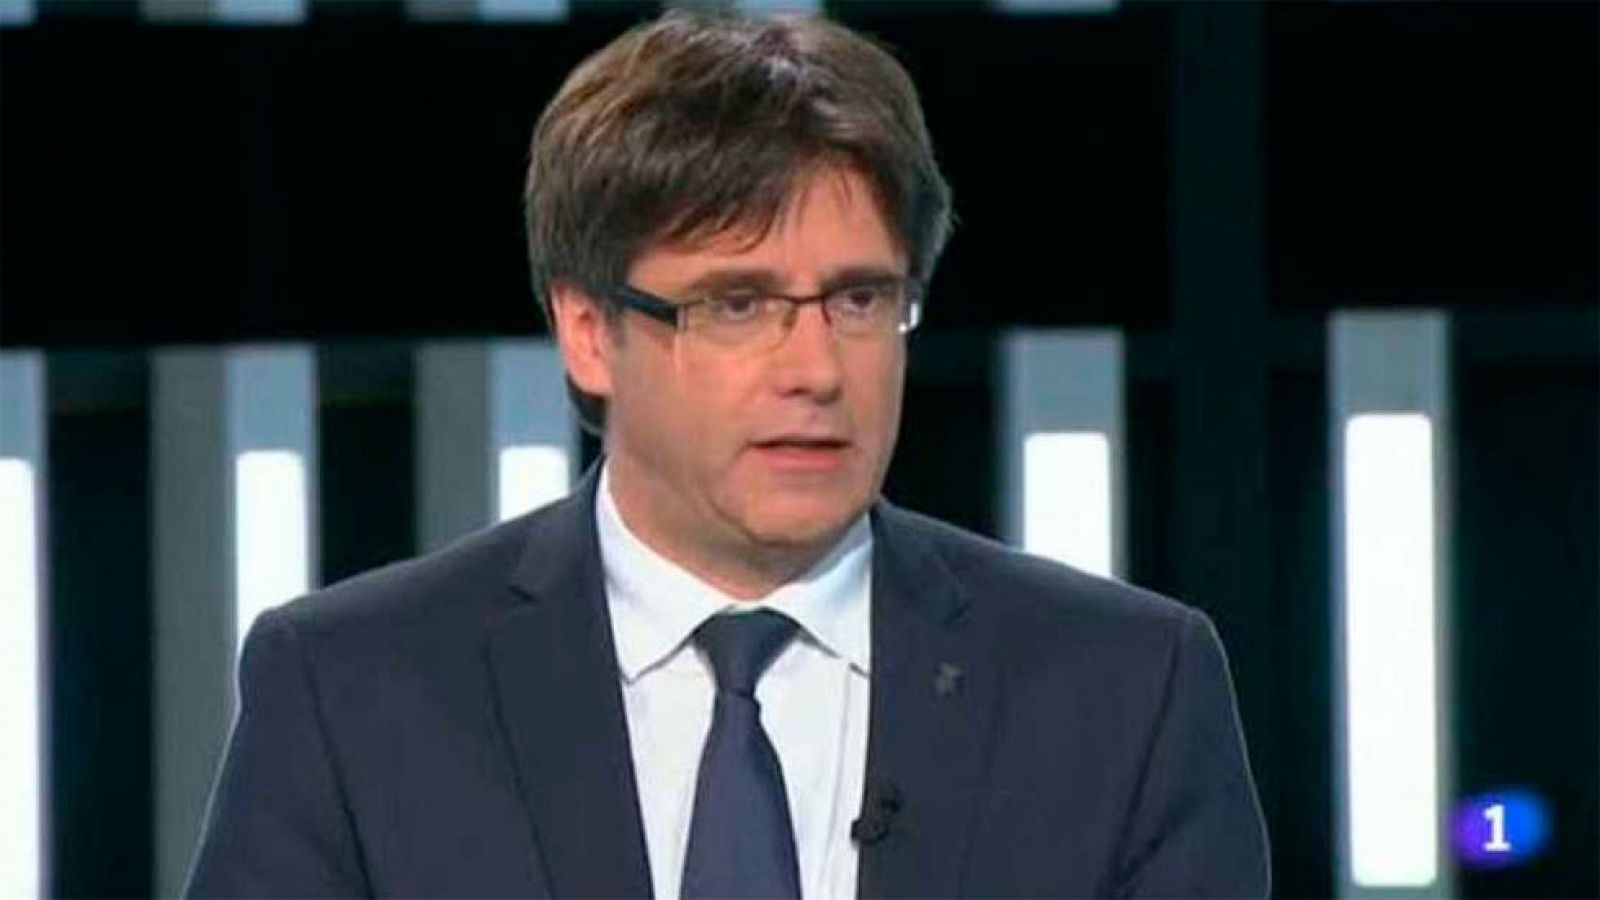 El Debat de La 1 - Carles Puigdemont, president de la Generalitat de Catalunya - Avanç semana